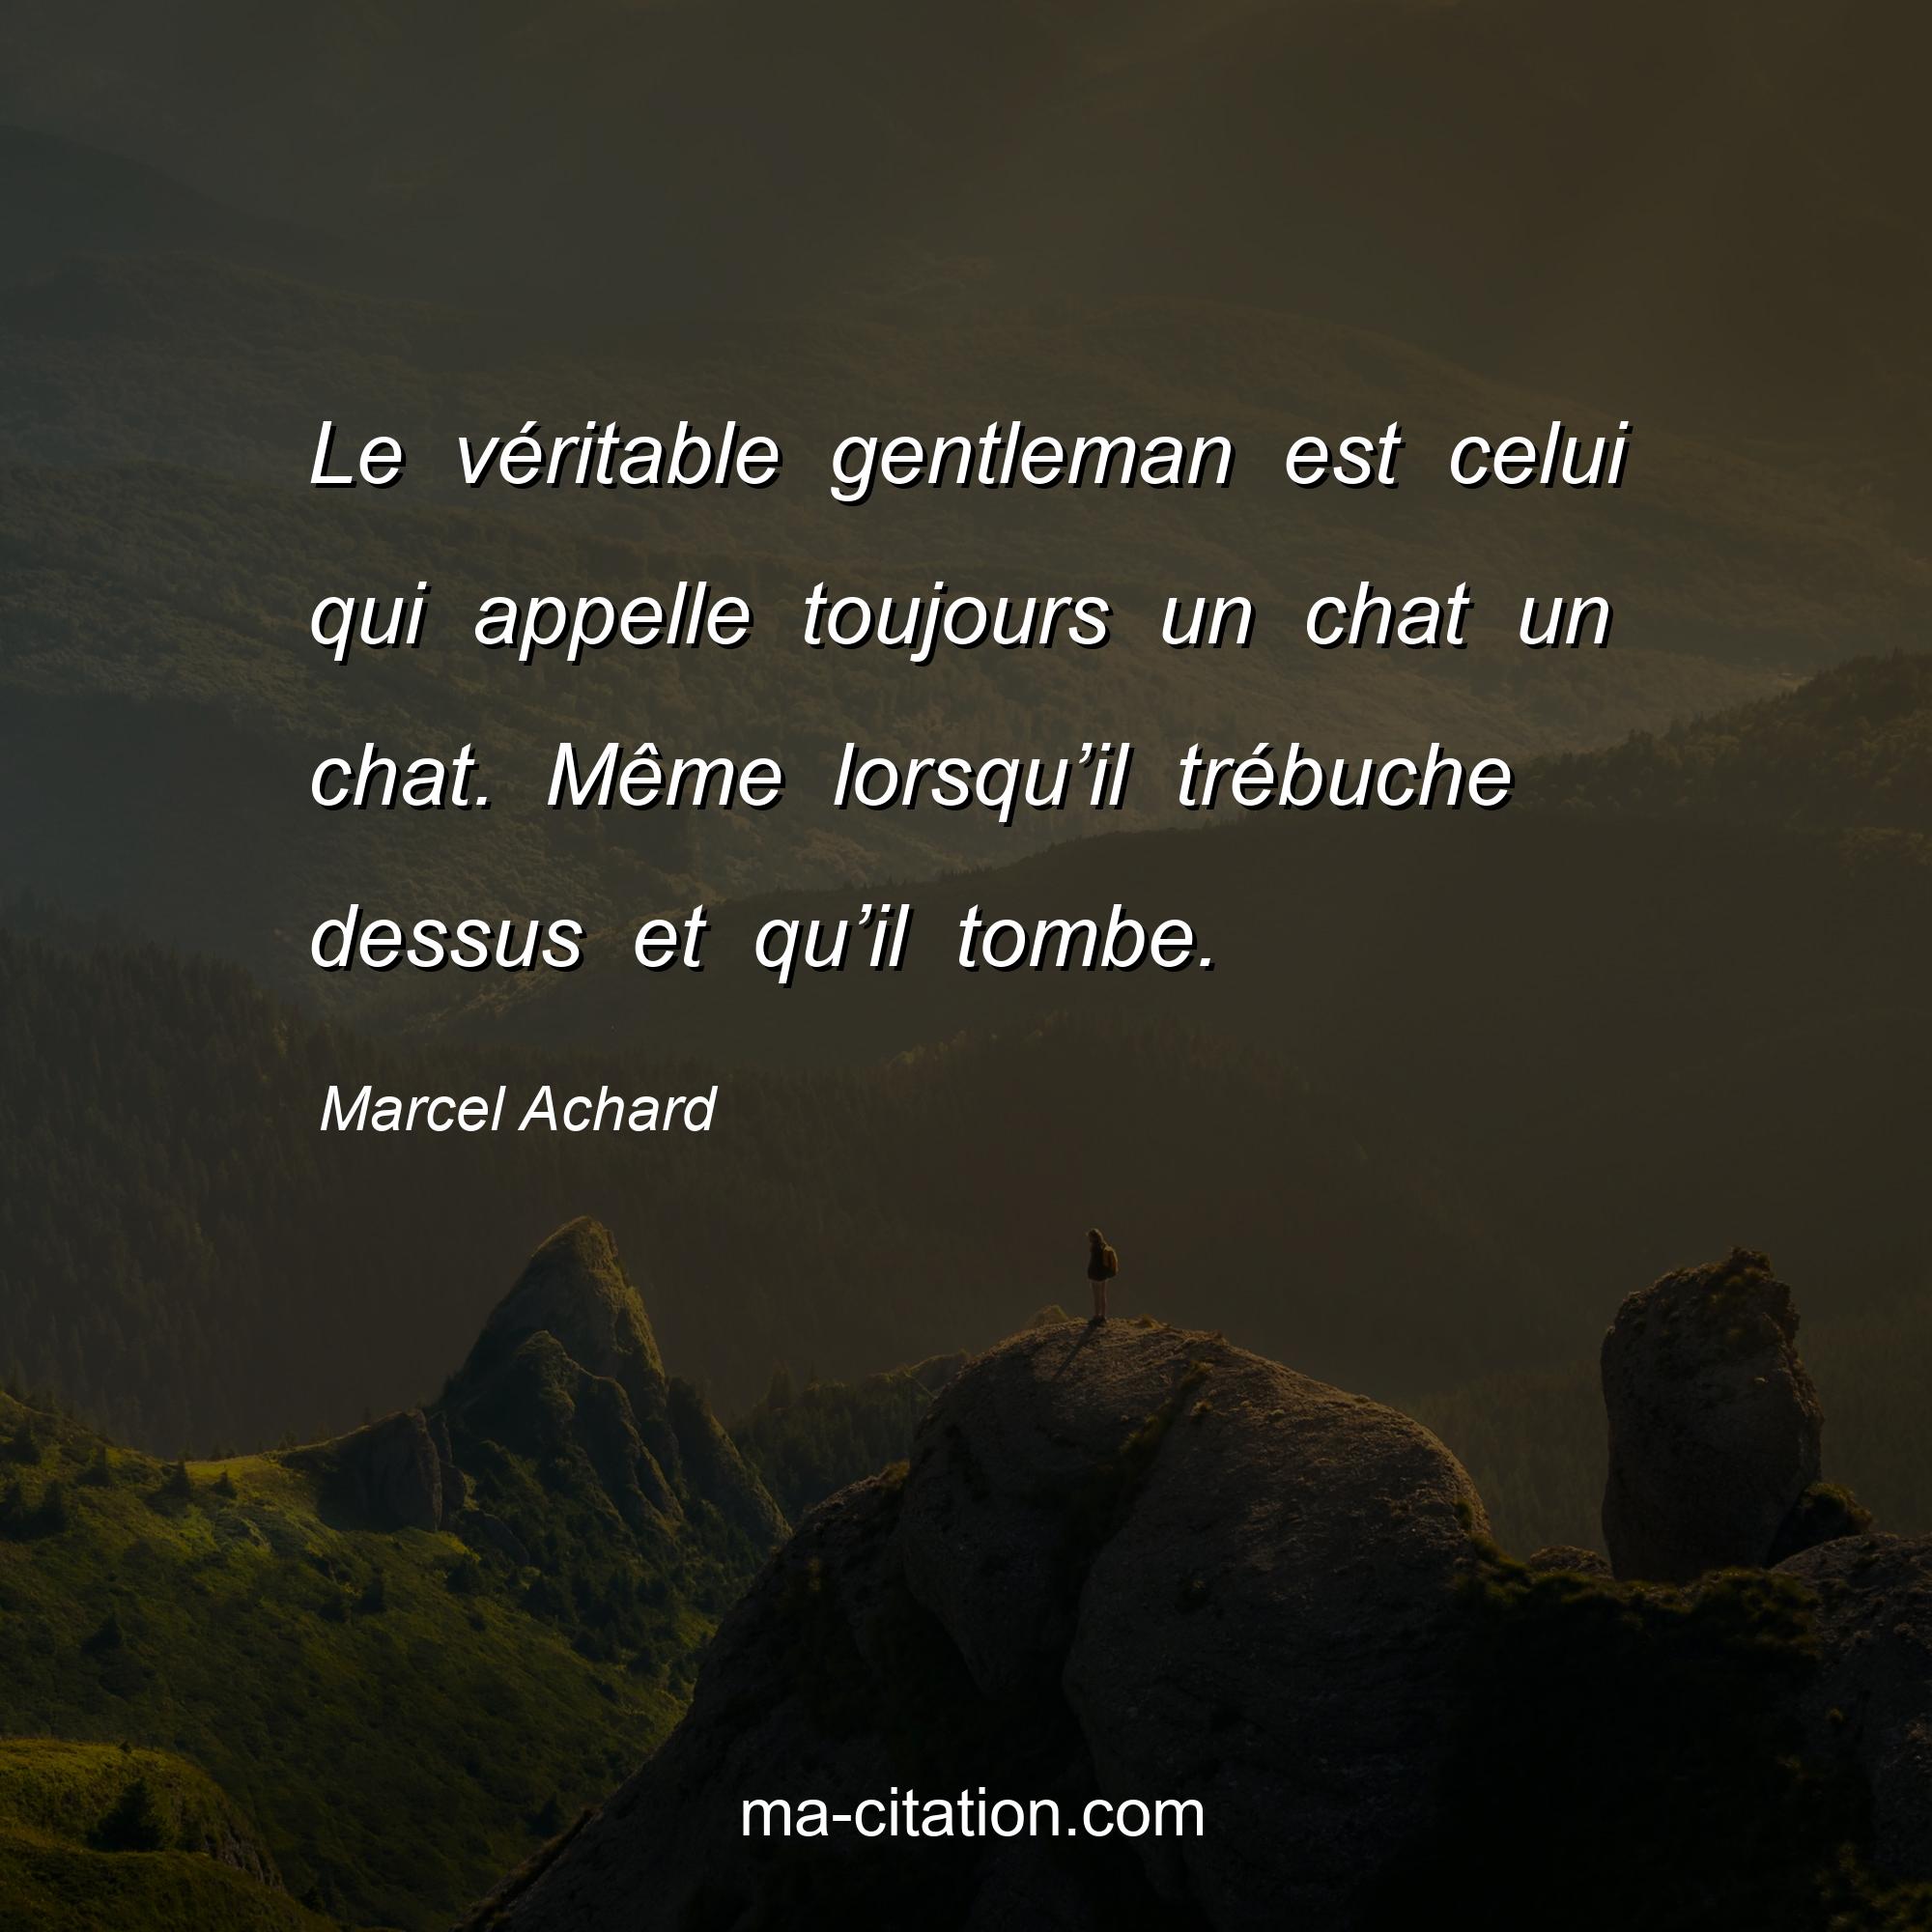 Marcel Achard : Le véritable gentleman est celui qui appelle toujours un chat un chat. Même lorsqu’il trébuche dessus et qu’il tombe.